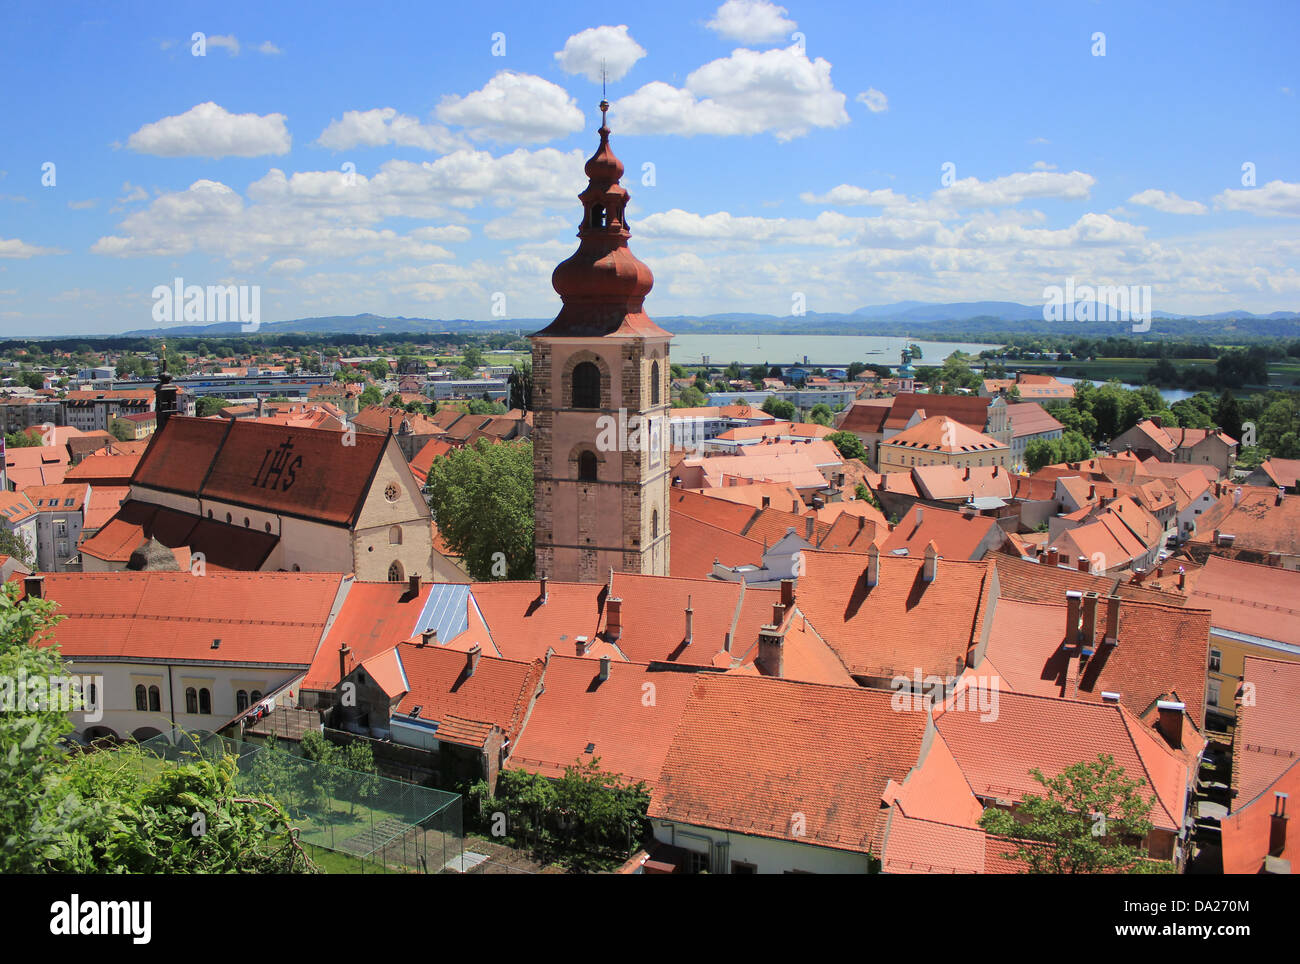 Old town center of Ptuj, Slovenia, Europe Stock Photo